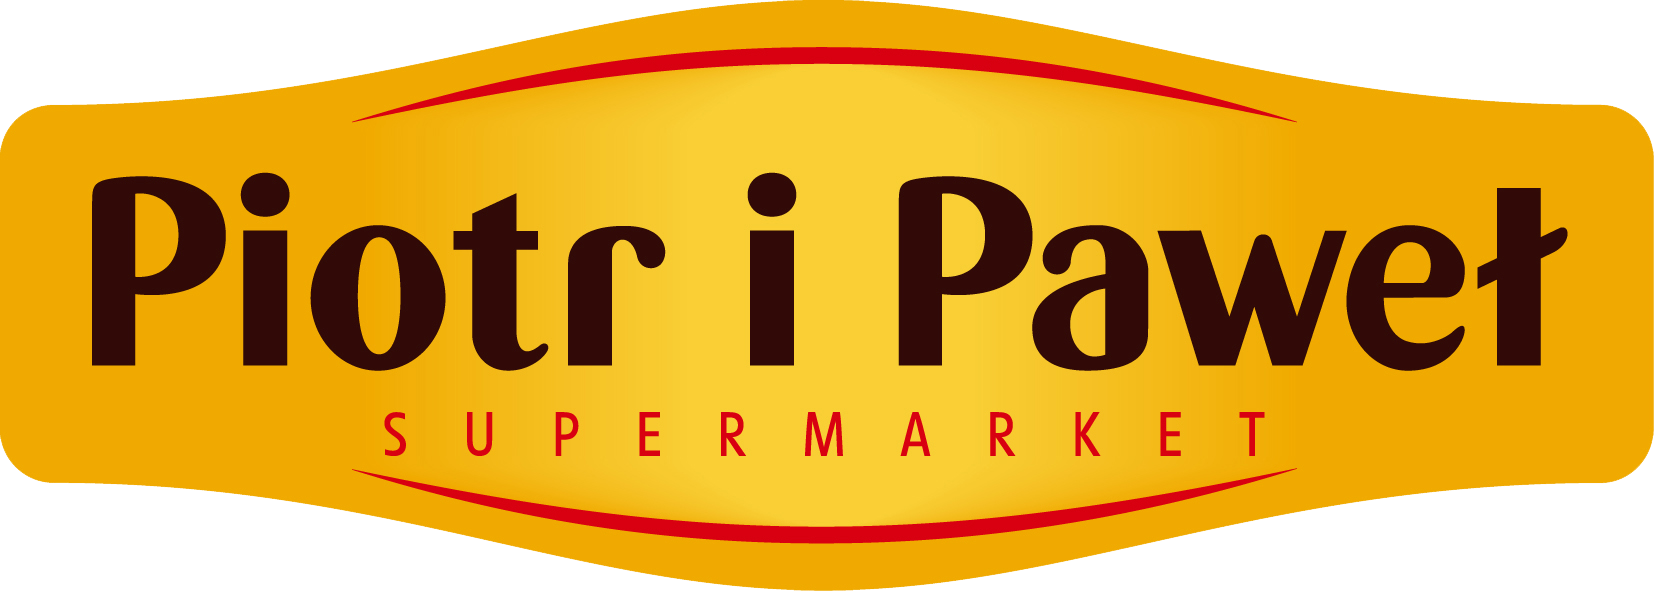 Nowy supermarket Piotr i Paweł powstał we Wrocławiu